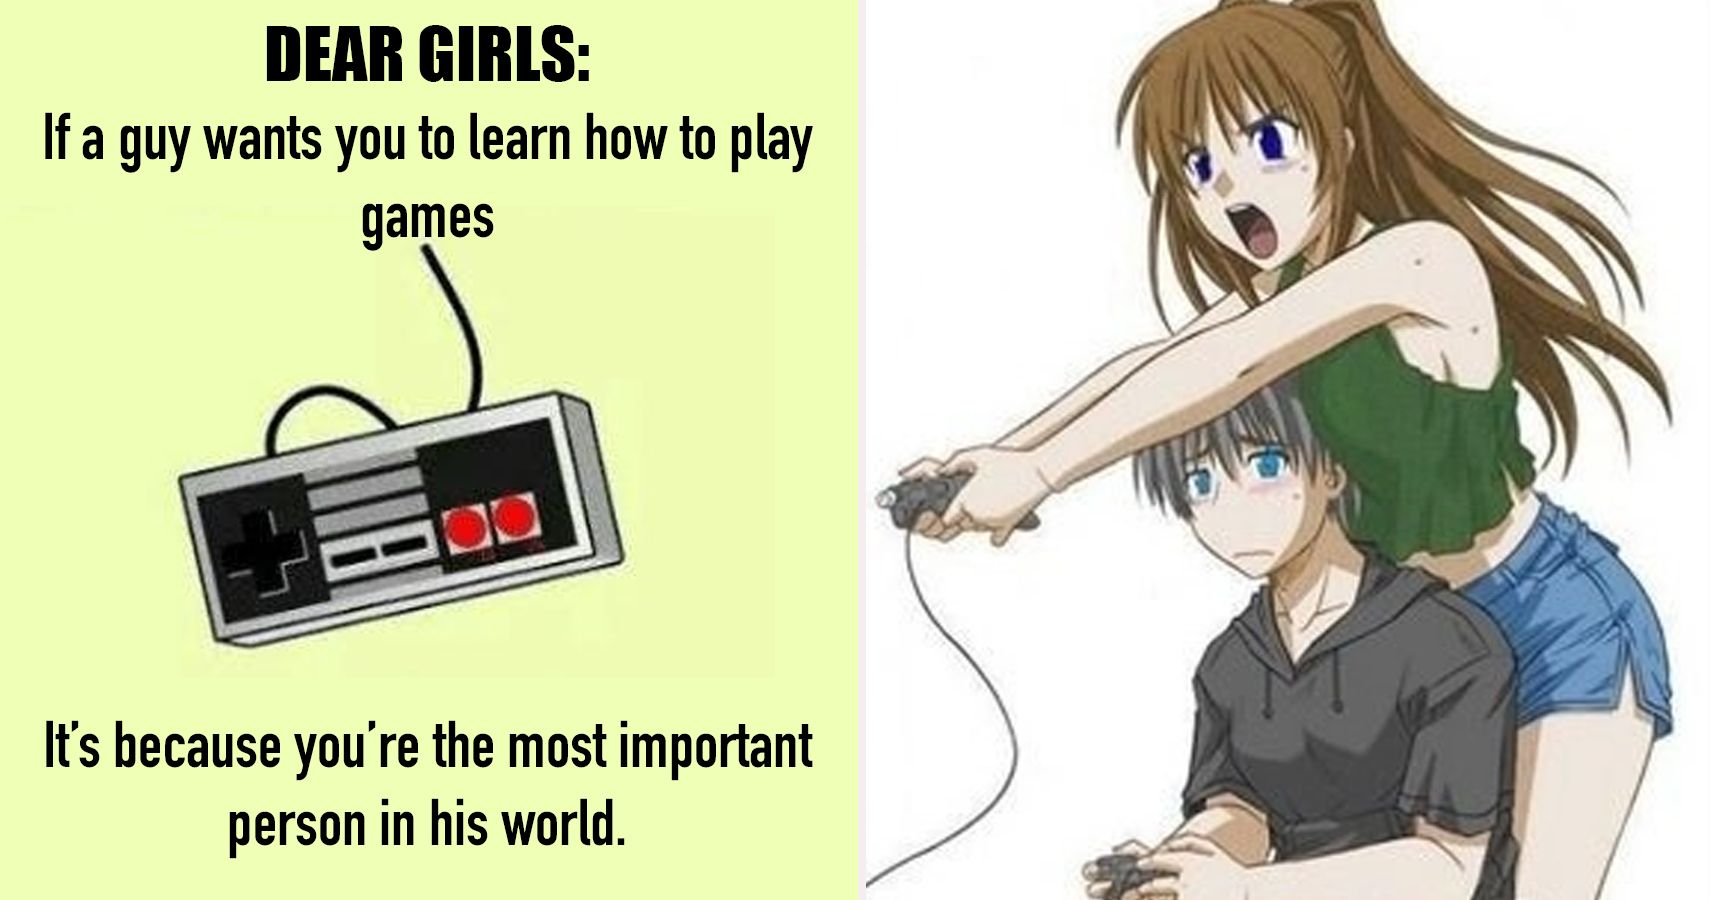 30 Gamer Girl Vs Gamer Guy Memes That Are Hilariously True